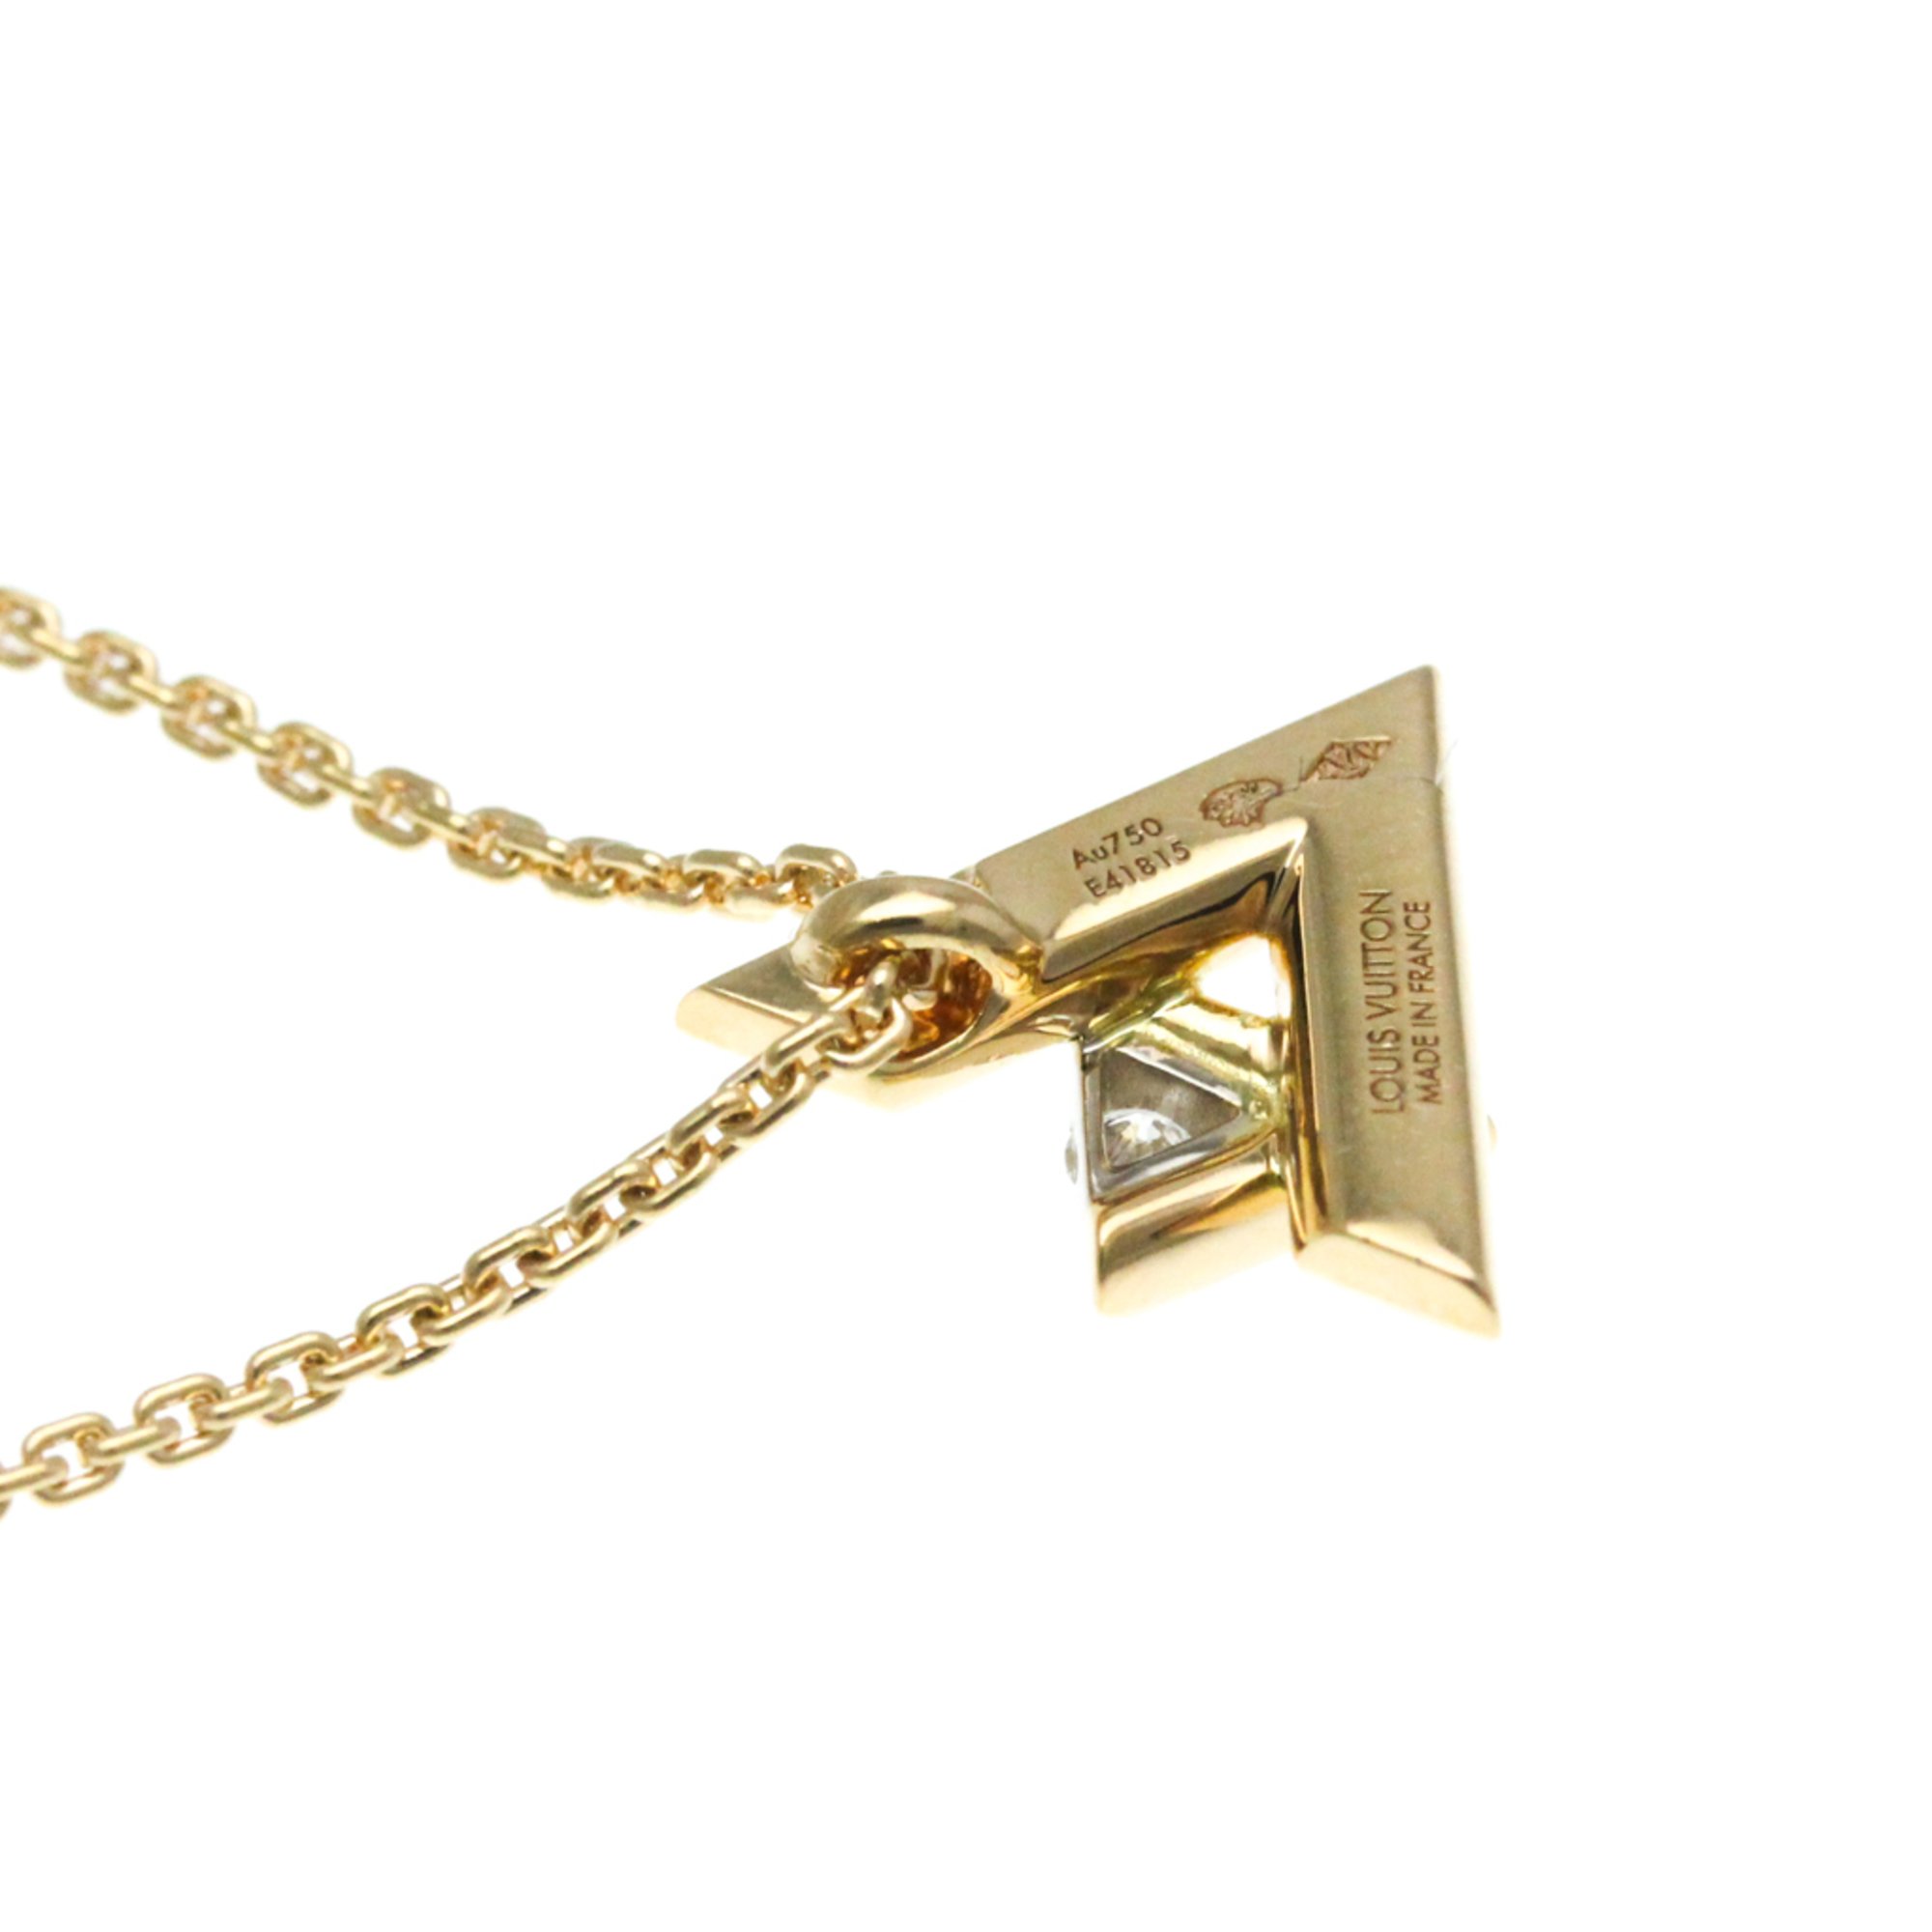 Louis Vuitton Pendant Volto One PM Q93813 Pink Gold (18K) Diamond Men,Women Fashion Pendant Necklace Carat/0.03 (Pink Gold)